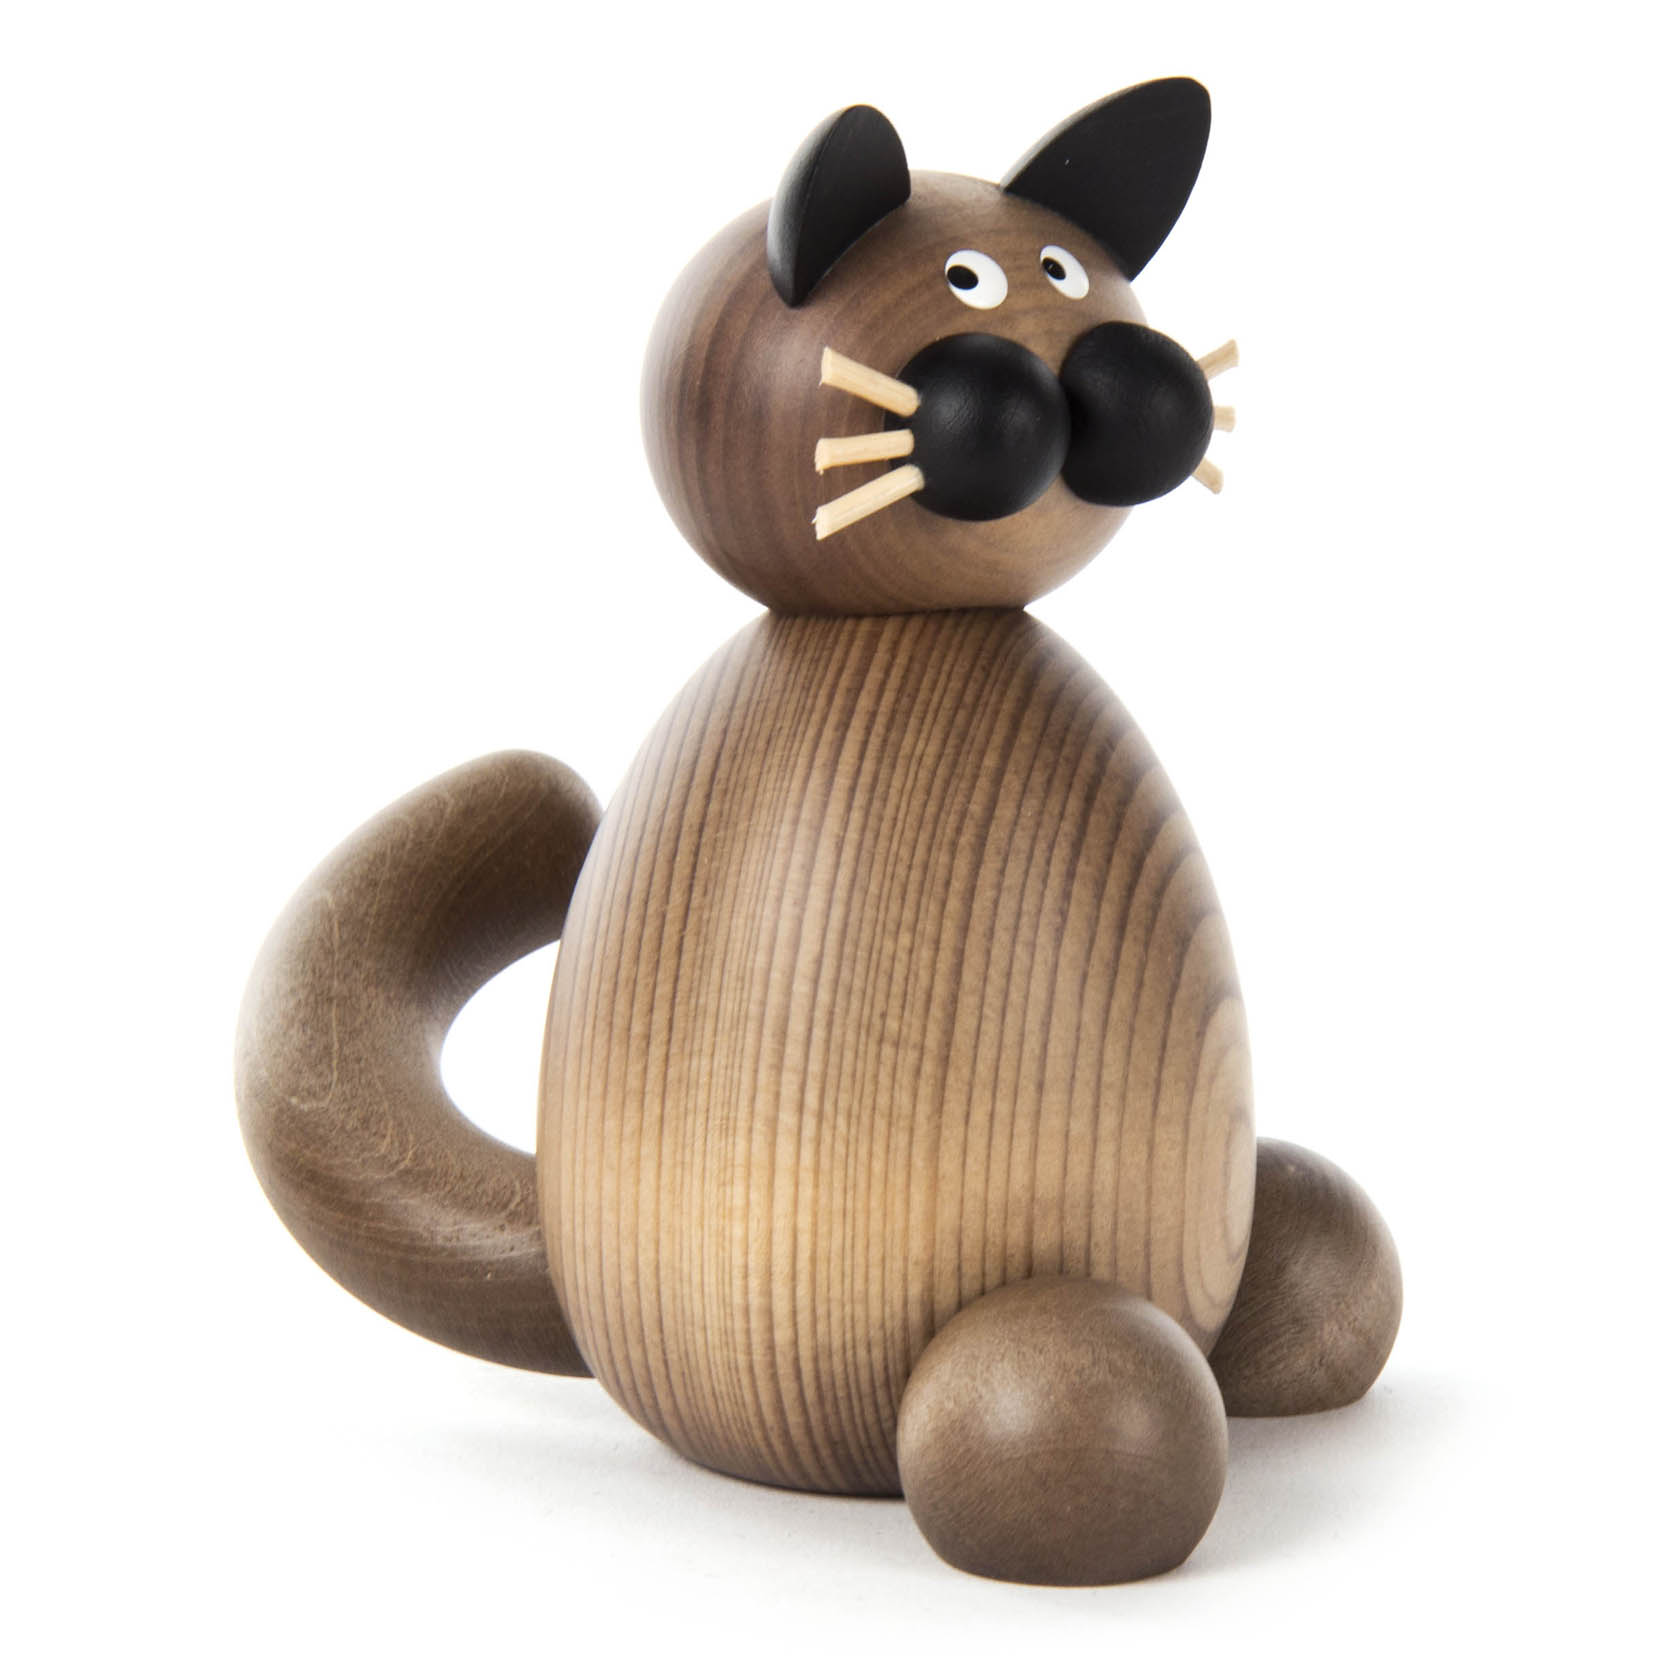 Katze Karli, grau-schwarz, groß sitzend im Dregeno Online Shop günstig kaufen